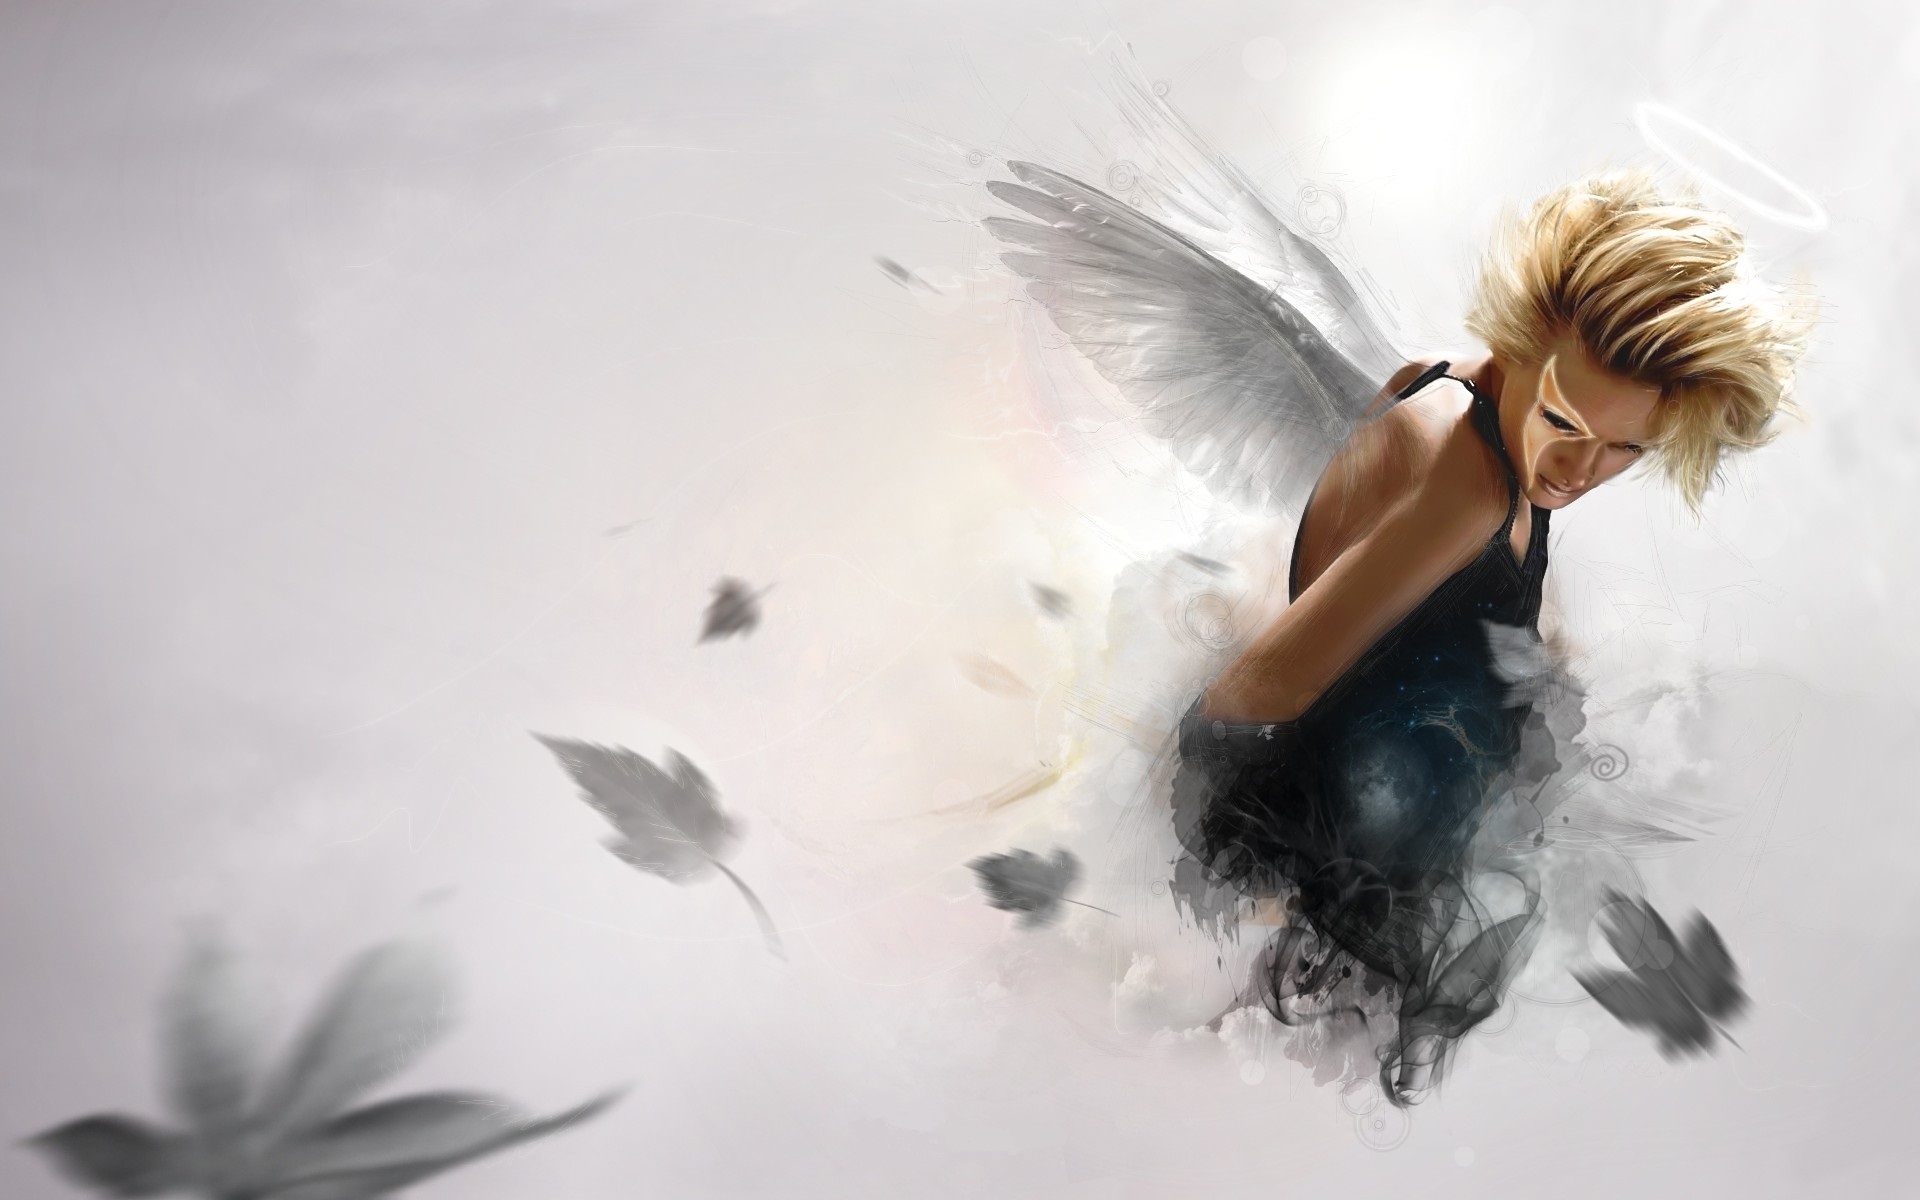 Angel Ways by xiondzz